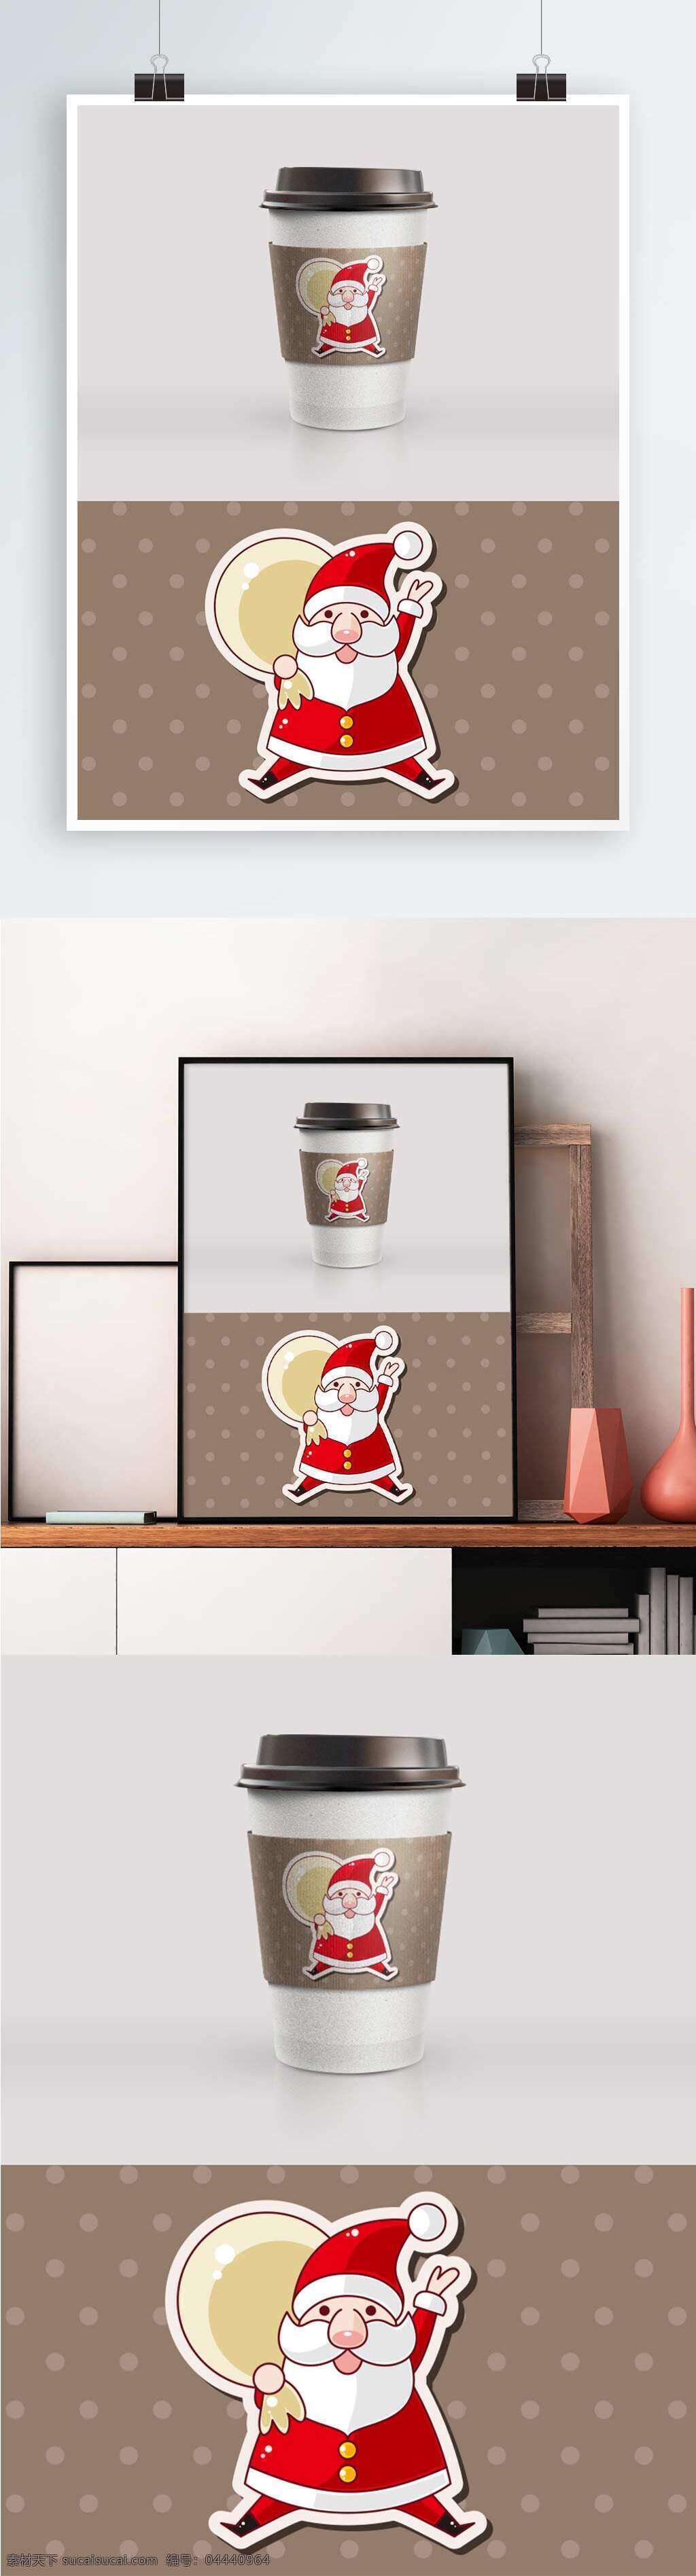 红色 圣诞老人 杯 套 包装设计 杯套 杯套设计 精美包装 纸杯图案